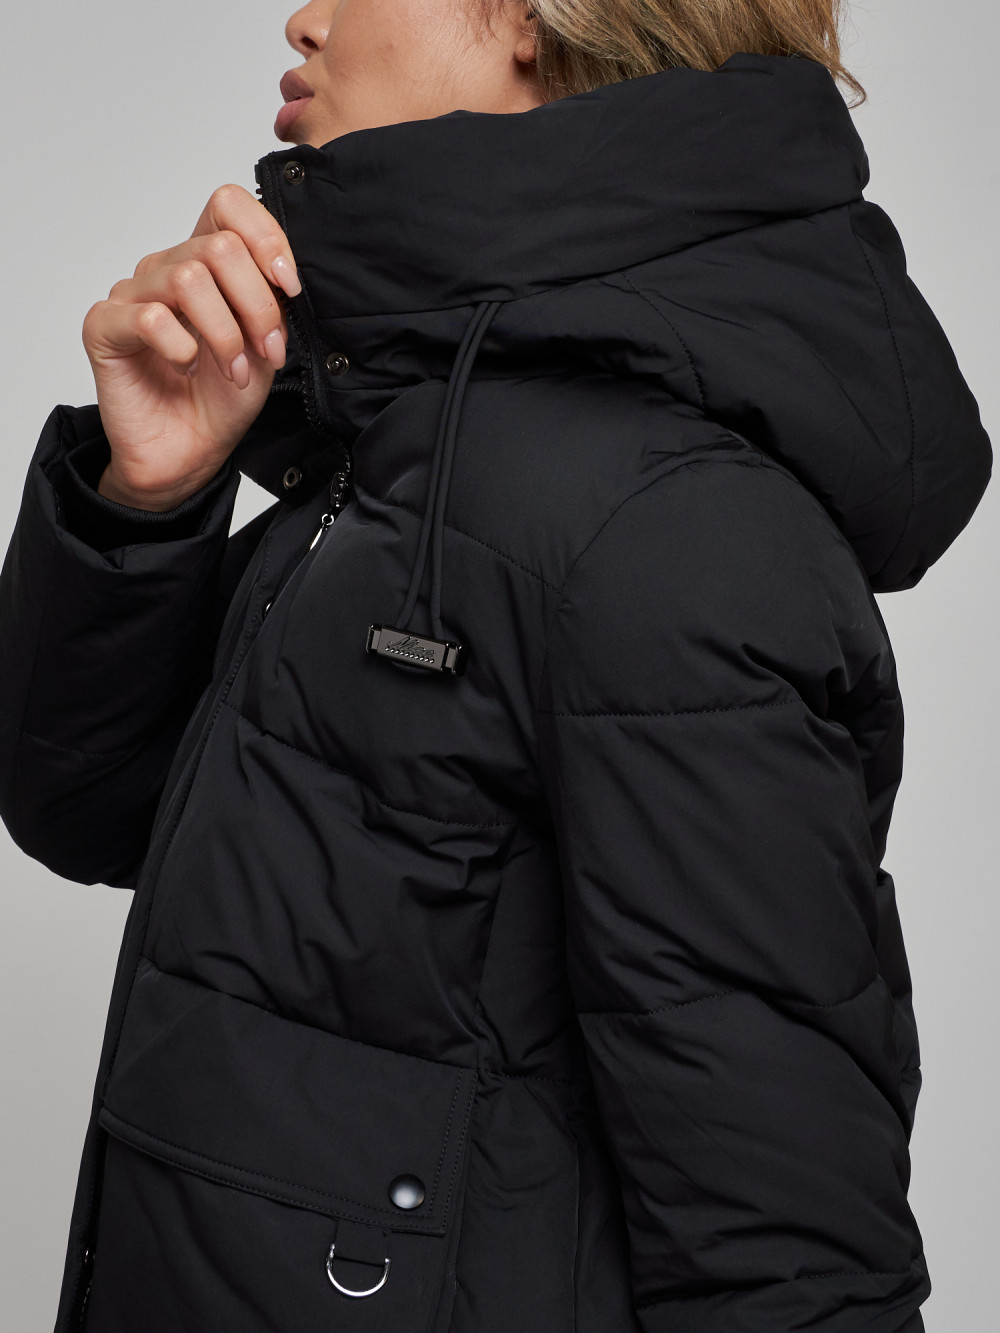 Купить куртку зимнюю оптом от производителя недорого в Москве 52303Ch 1